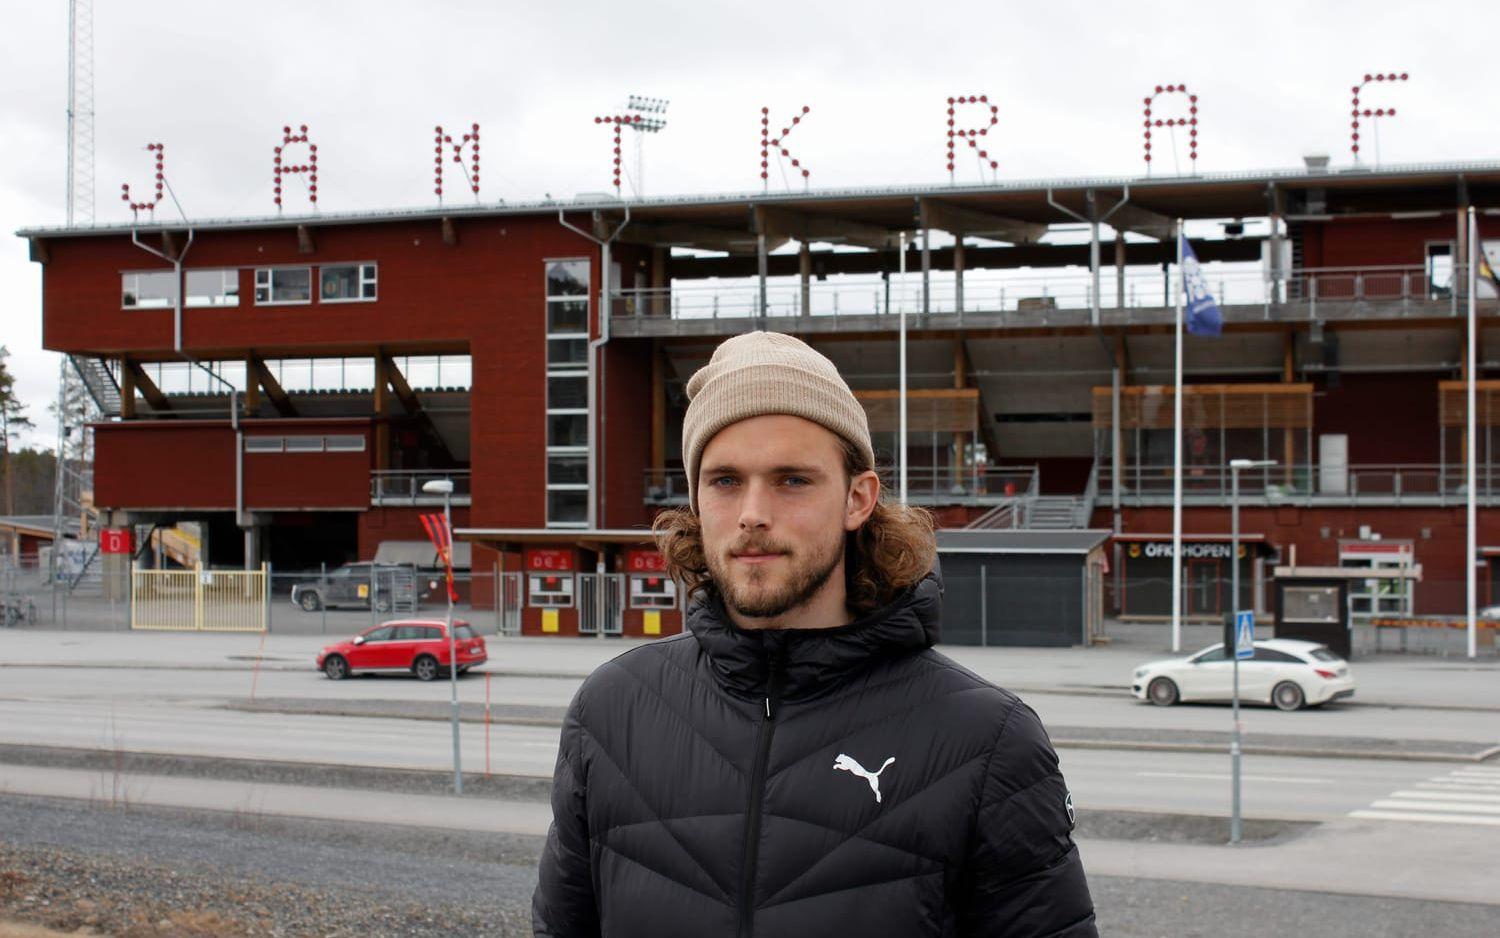 Jämtkraft Arena är Tom Petterssons nya hemmaplan och där har han ännu inte förlorat med sin klubb Östersunds FK. ”Människorna här uppe är otroligt hjälpsamma och trevliga. Man känner sig verkligen välkommen”, säger Tom. Bild: Toni Andersson